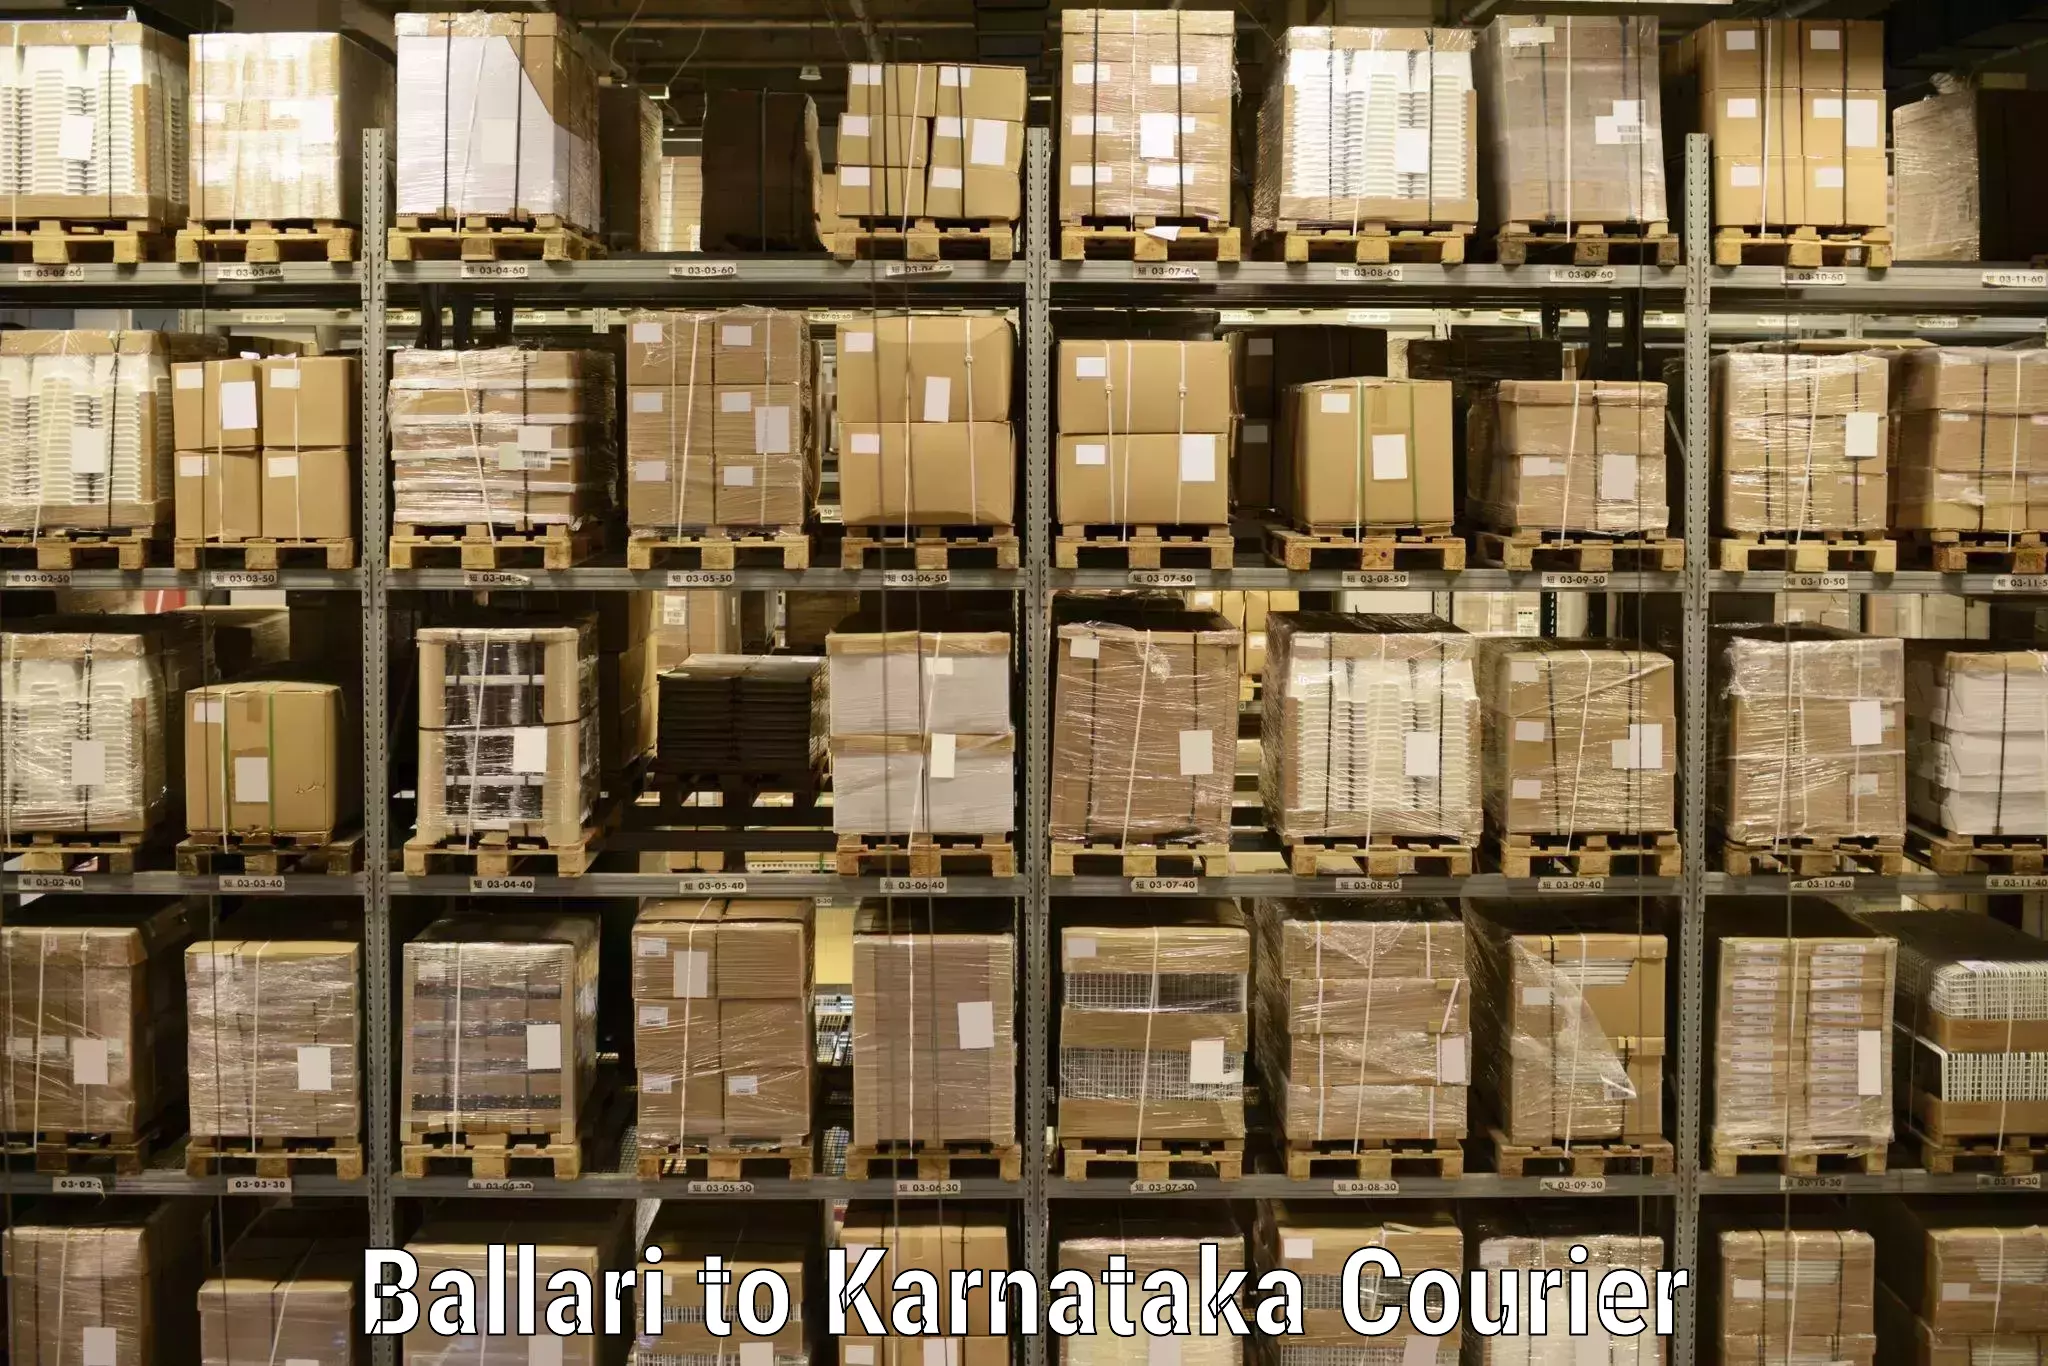 User-friendly delivery service Ballari to Saundatti Yallamma